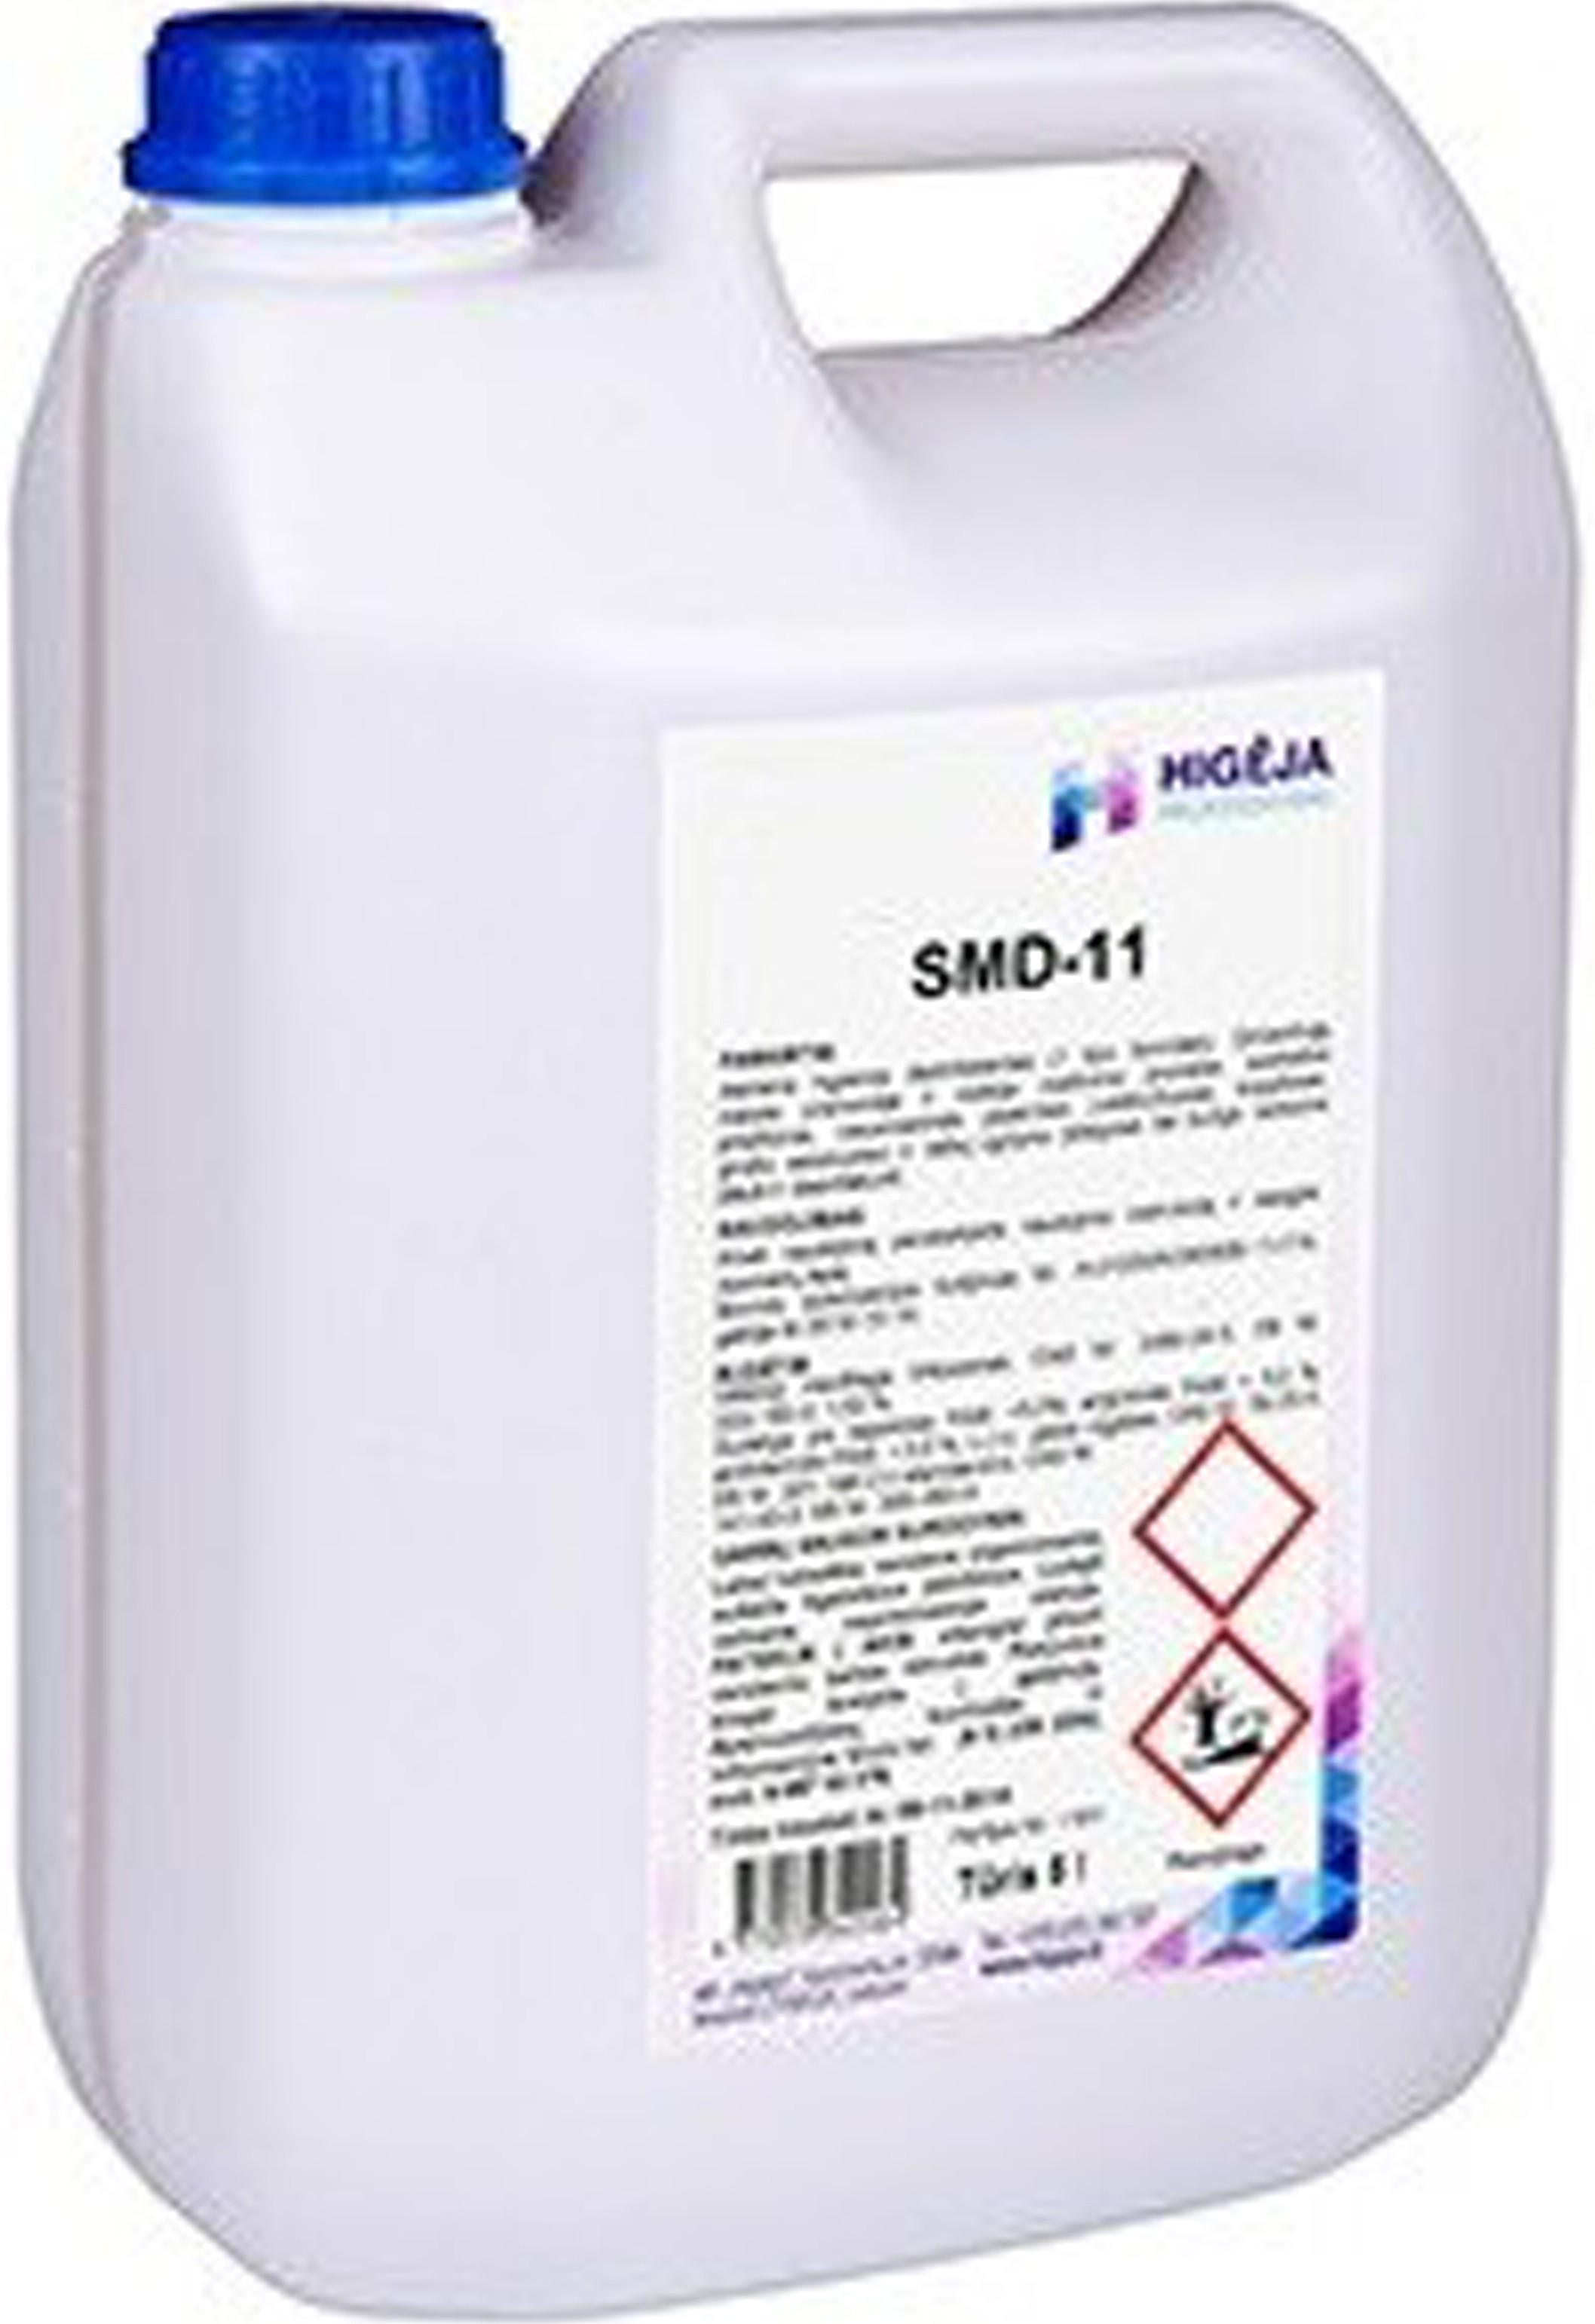 * SMD-11 Skystas dezinfekuojantis muilas, 5 L